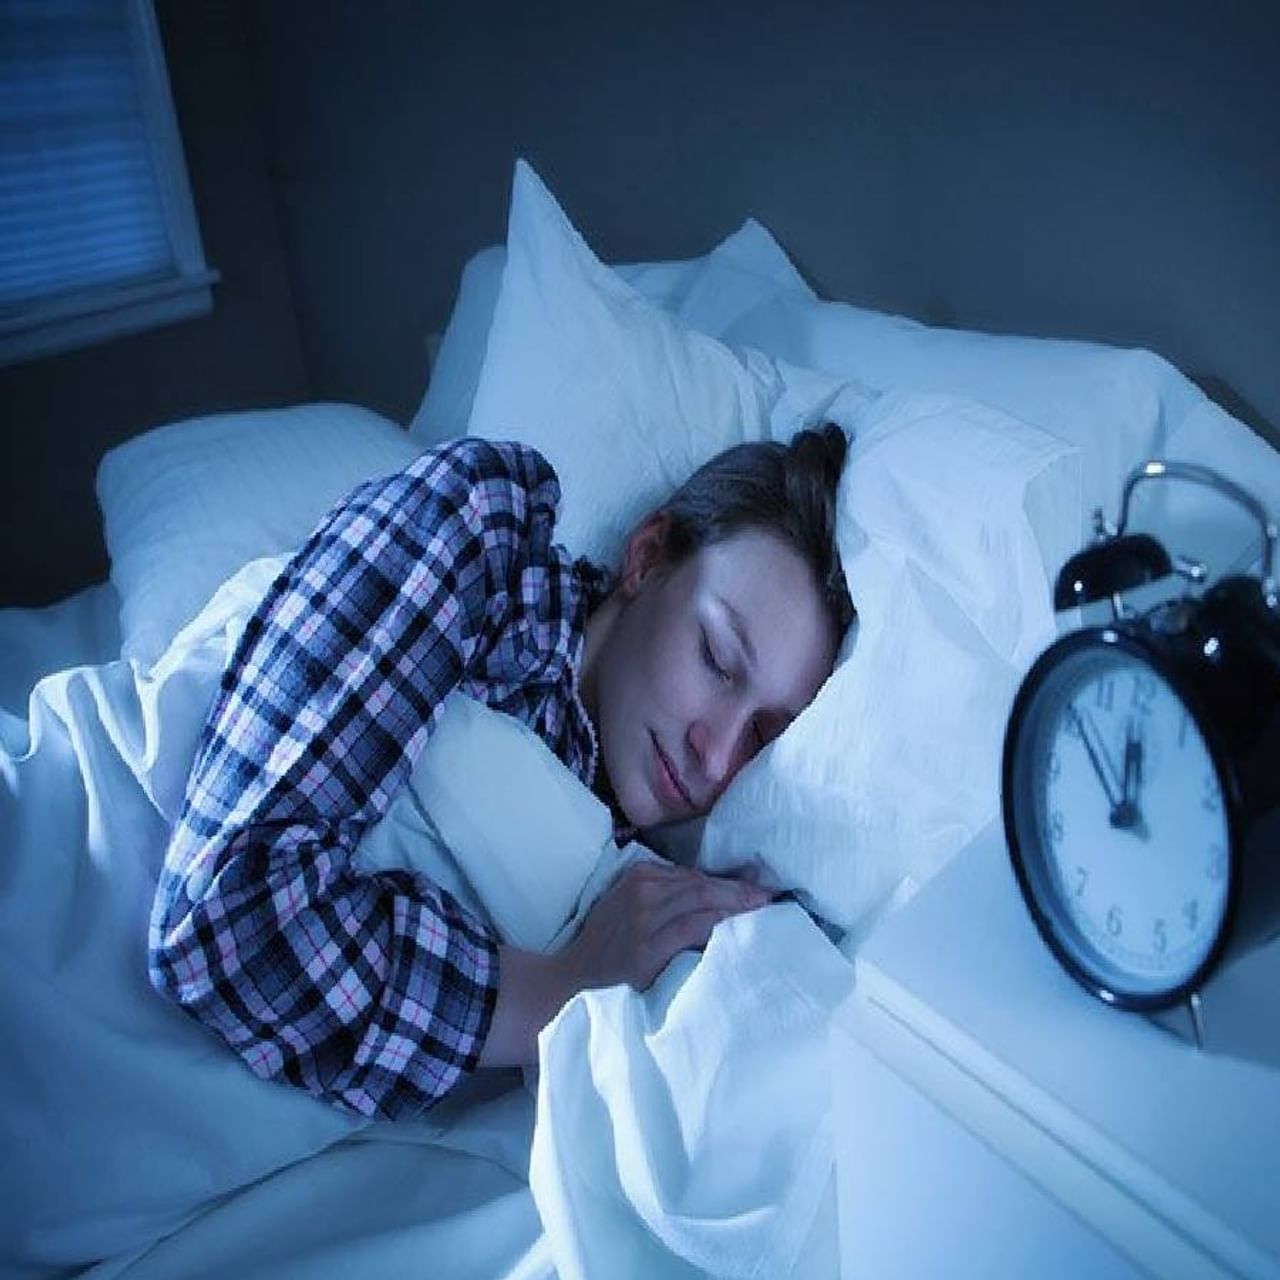 आपल्यापैकी बरेचजण तणावामुळे कमी झोप घेतात. पण झोप घेणे तुमच्या आरोग्यासाठी खूप महत्वाचे आहे, जर तुम्ही नीट झोपत नसाल तर त्याचा शरीरावर वाईट परिणाम होतो. जर तुम्हाला पुरेशी झोप लागली तर त्याचा तुमच्या शारीरिक आरोग्यावरच नाही तर तुमच्या मानसिक आरोग्यावर, त्वचेच्या आणि केसांच्या आरोग्यावरही परिणाम होतो. यासाठी चांगली झोप घेणे आपल्या आरोग्यासाठी अत्यंत फायदेशीर आहे. 